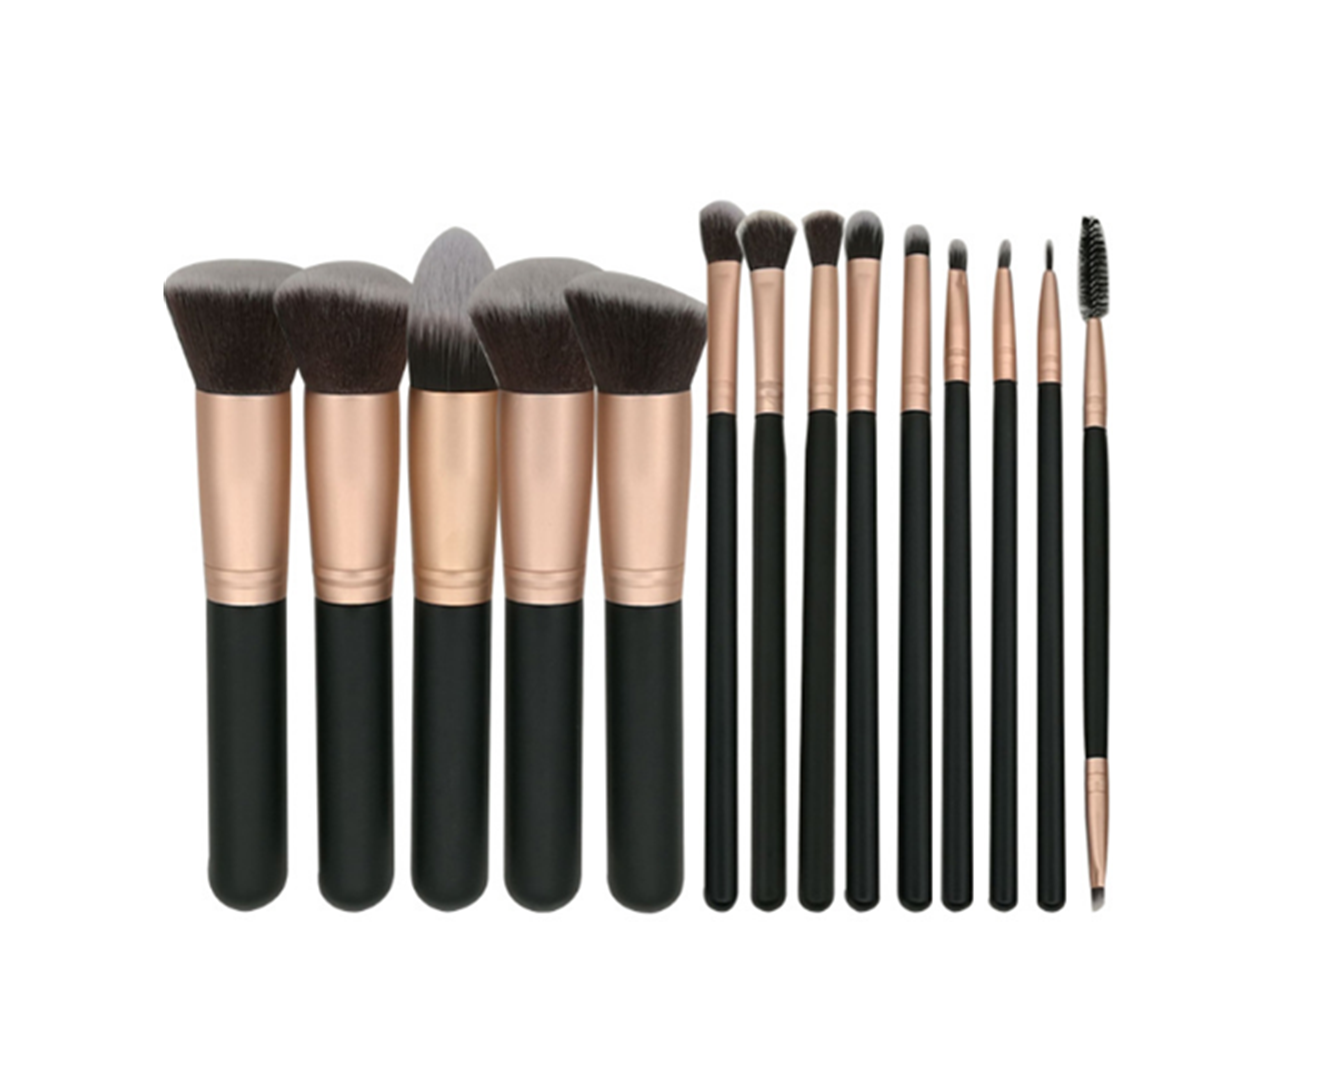 14PCS Makeup Brushes Set Powder Foundation Eyeshadow Make Up Brushes - ROSE GOLD